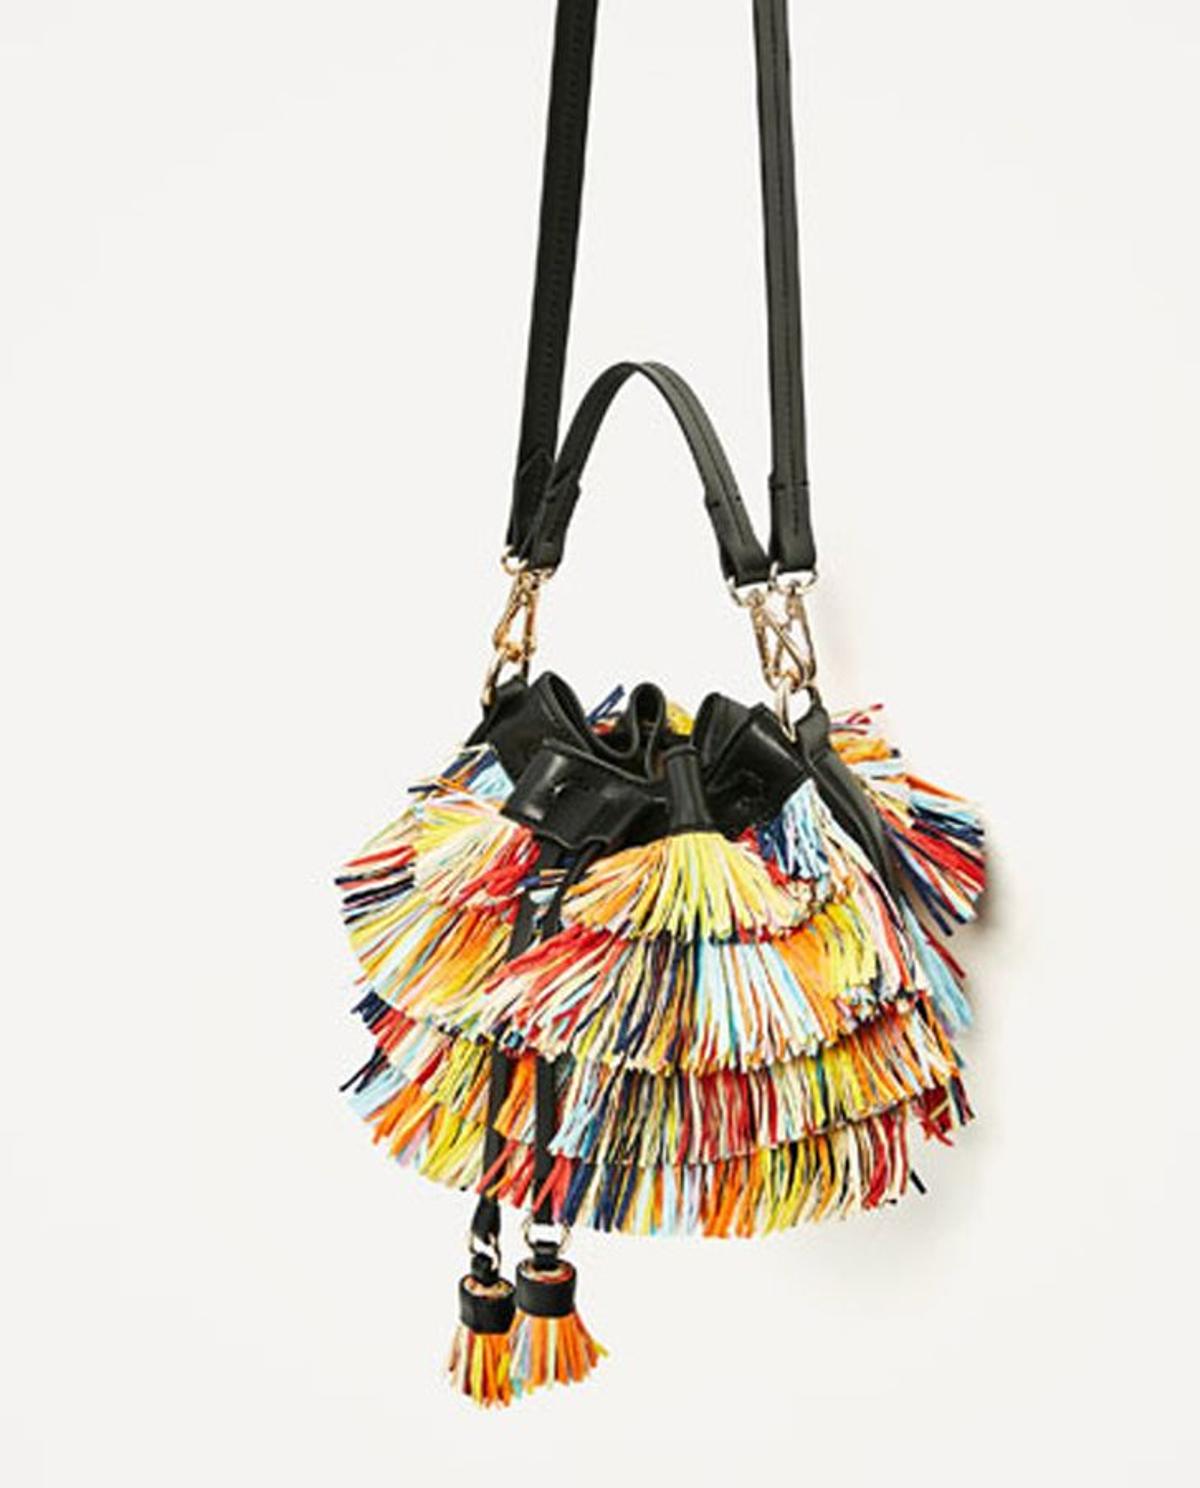 Rebajas Zara 2017: mini saca de flecos multicolor